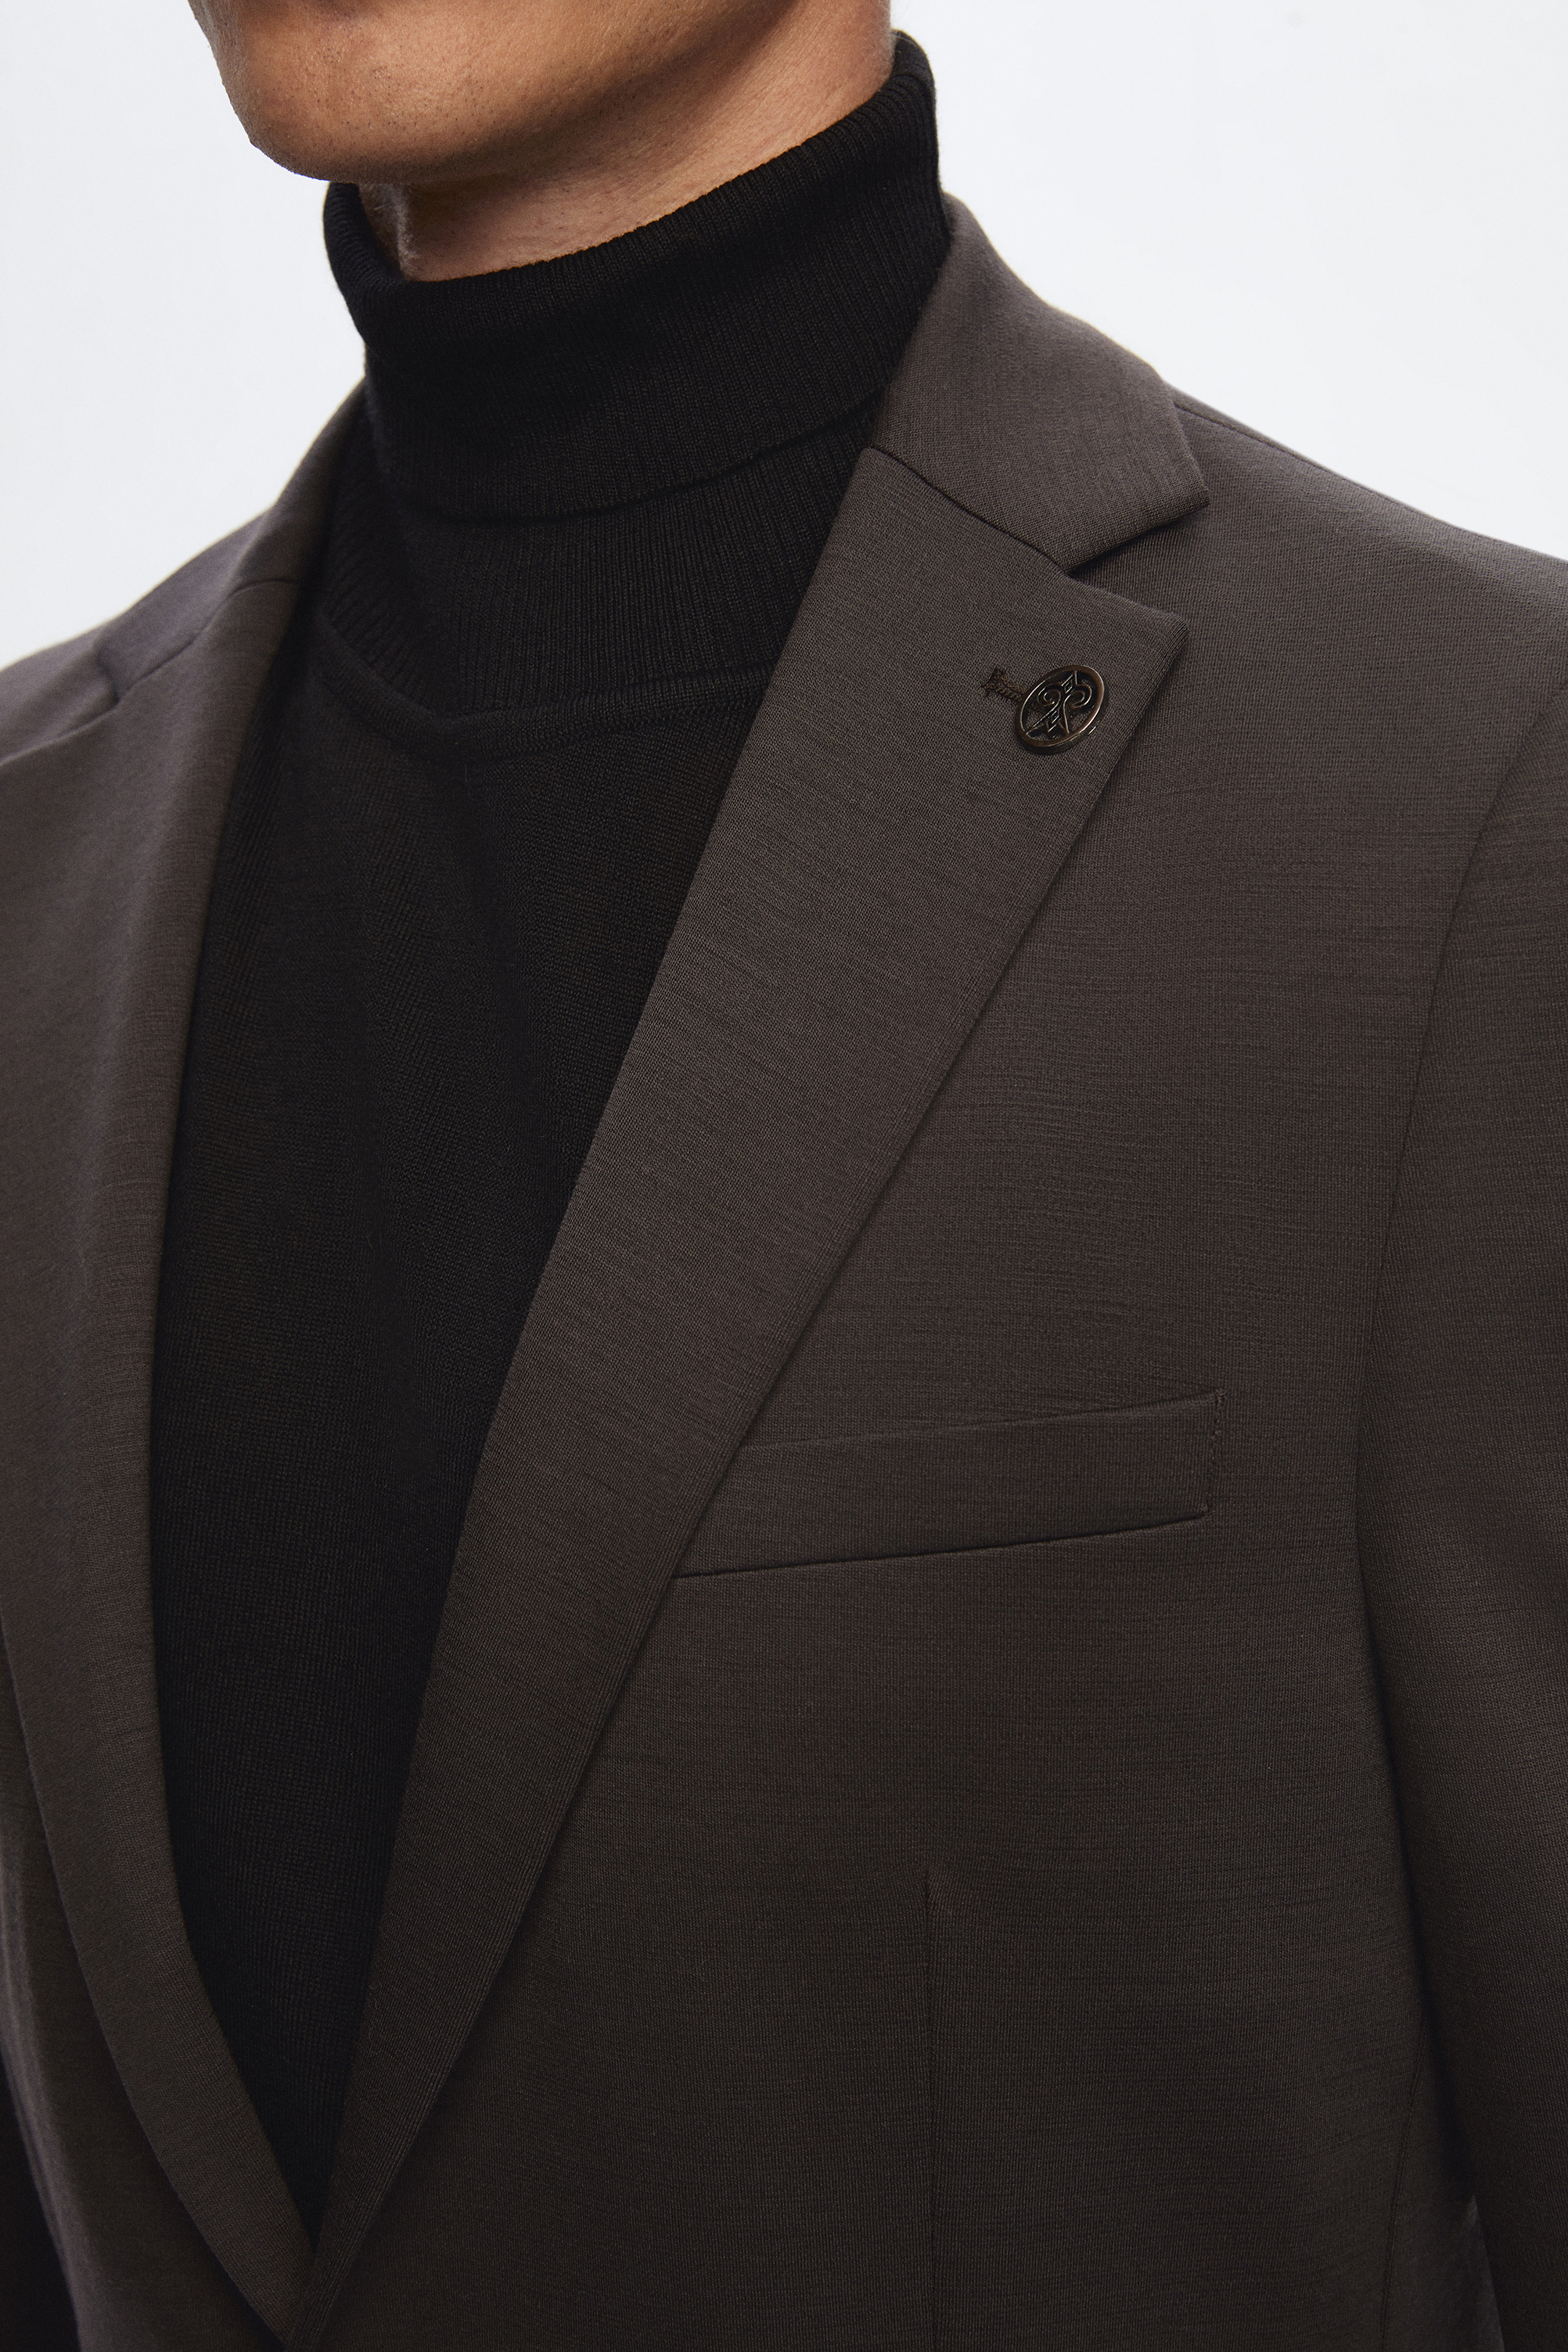 Damat Tween Damat Slim Fit Kahverengi Melanj %100 Yün Kumaş Ceket. 4